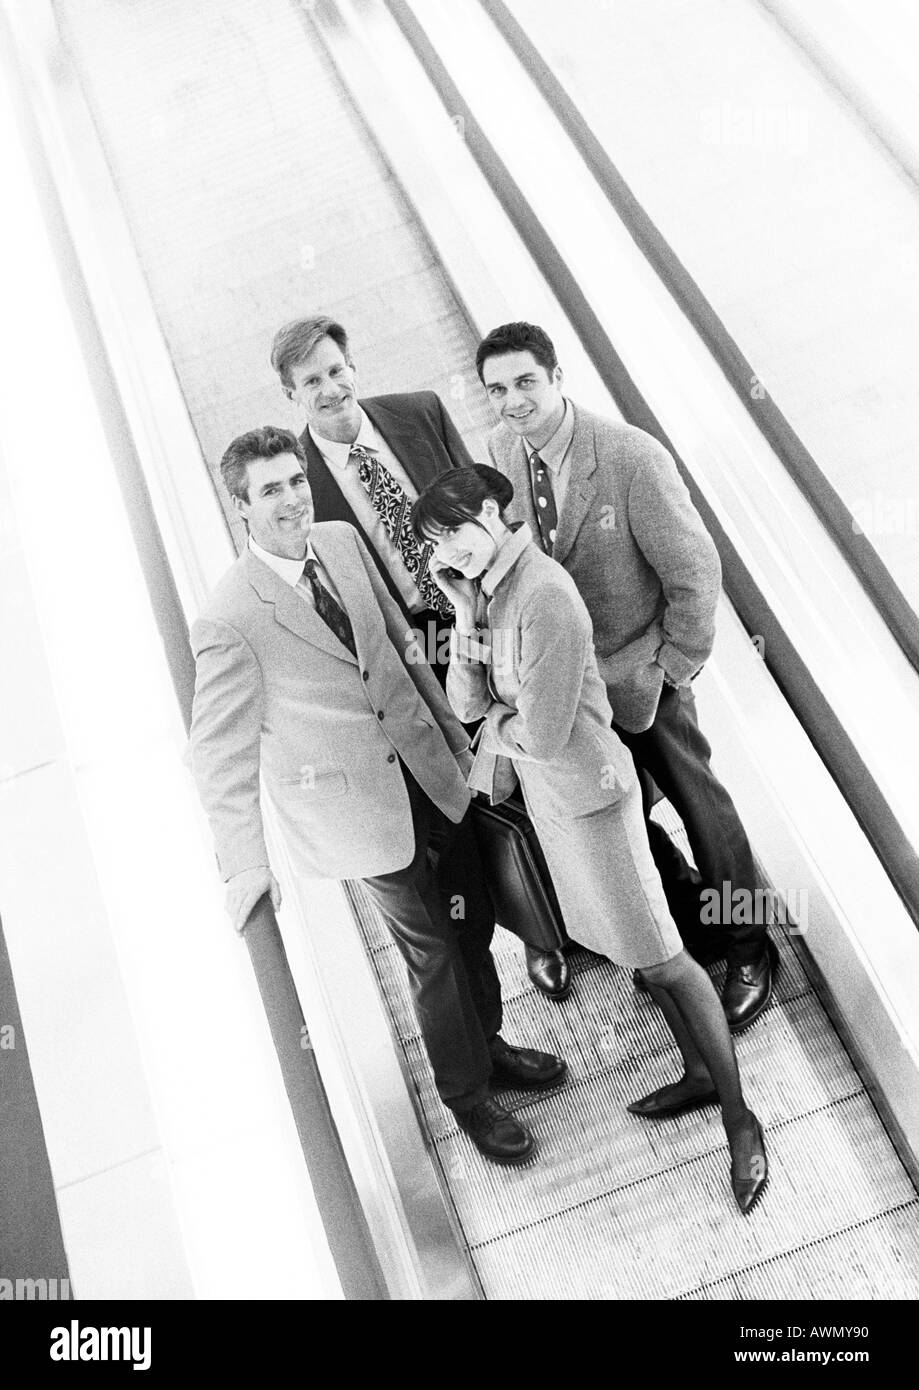 Gruppe von Geschäftsleuten auf Laufband lächelnd in die Kamera, Business-Frau vorne auf Handy, b&w. Stockfoto